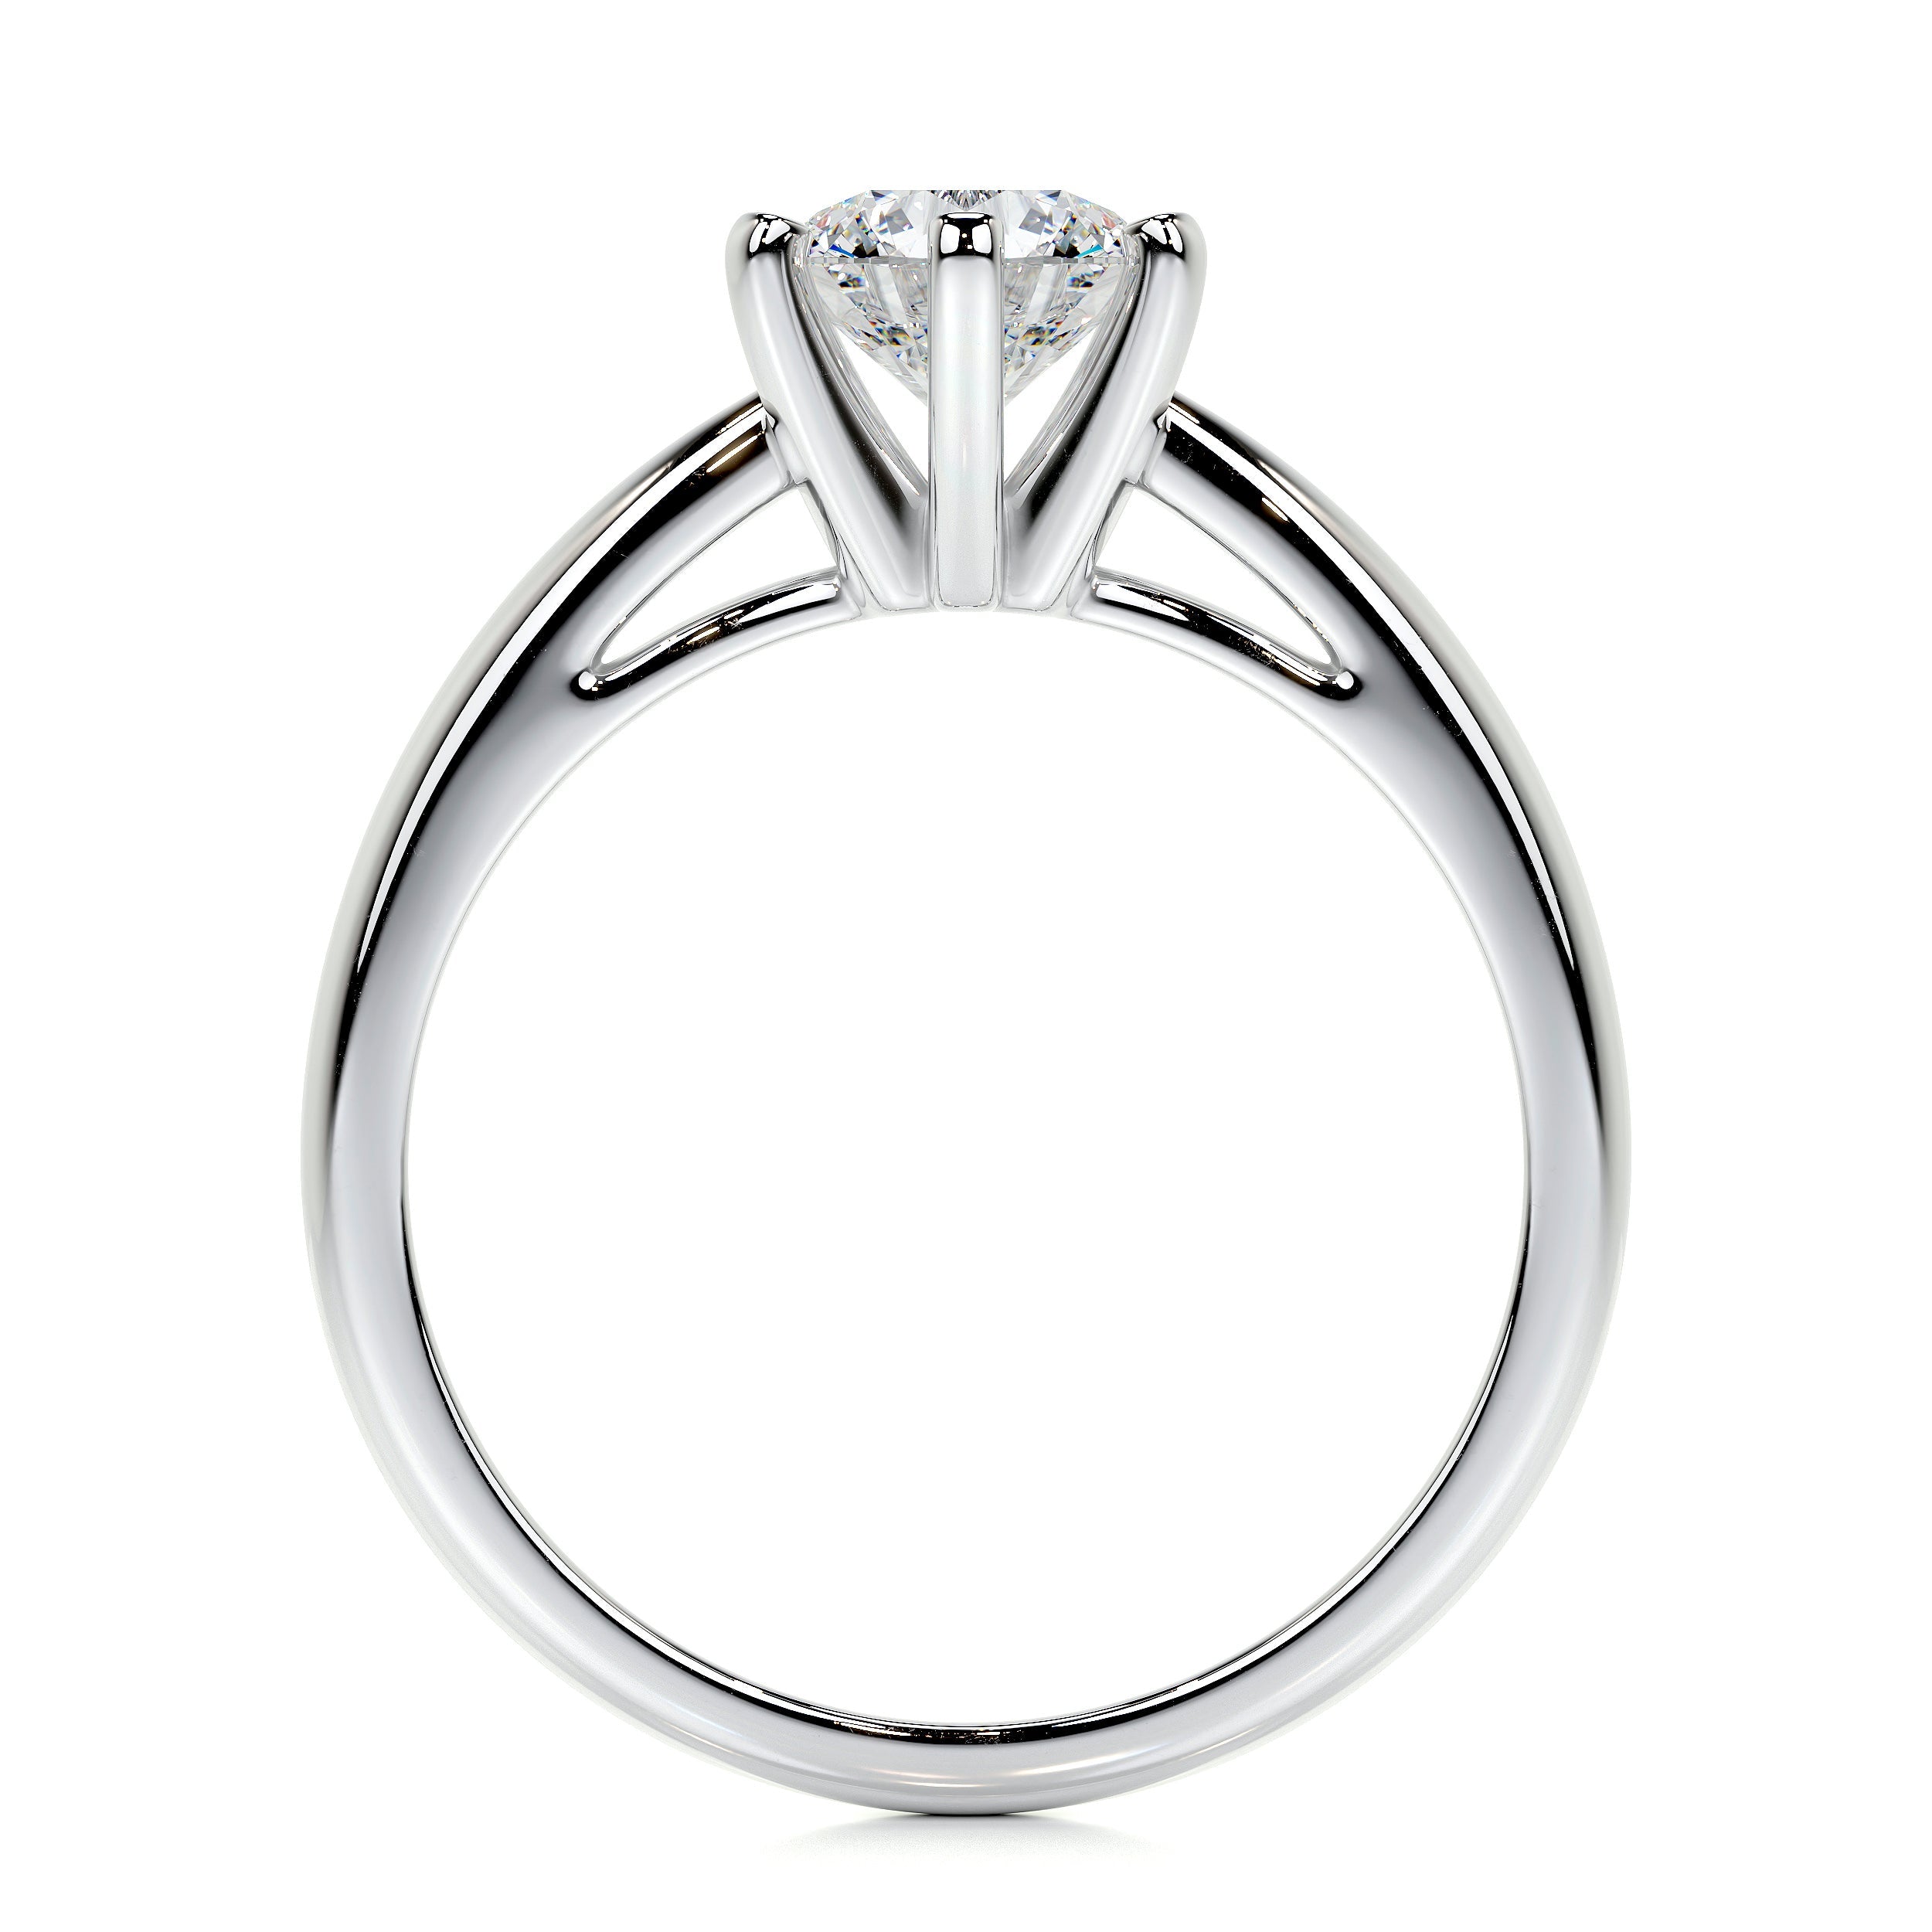 Diana Lab Grown Diamond Ring   (0.75 Carat) -14K White Gold